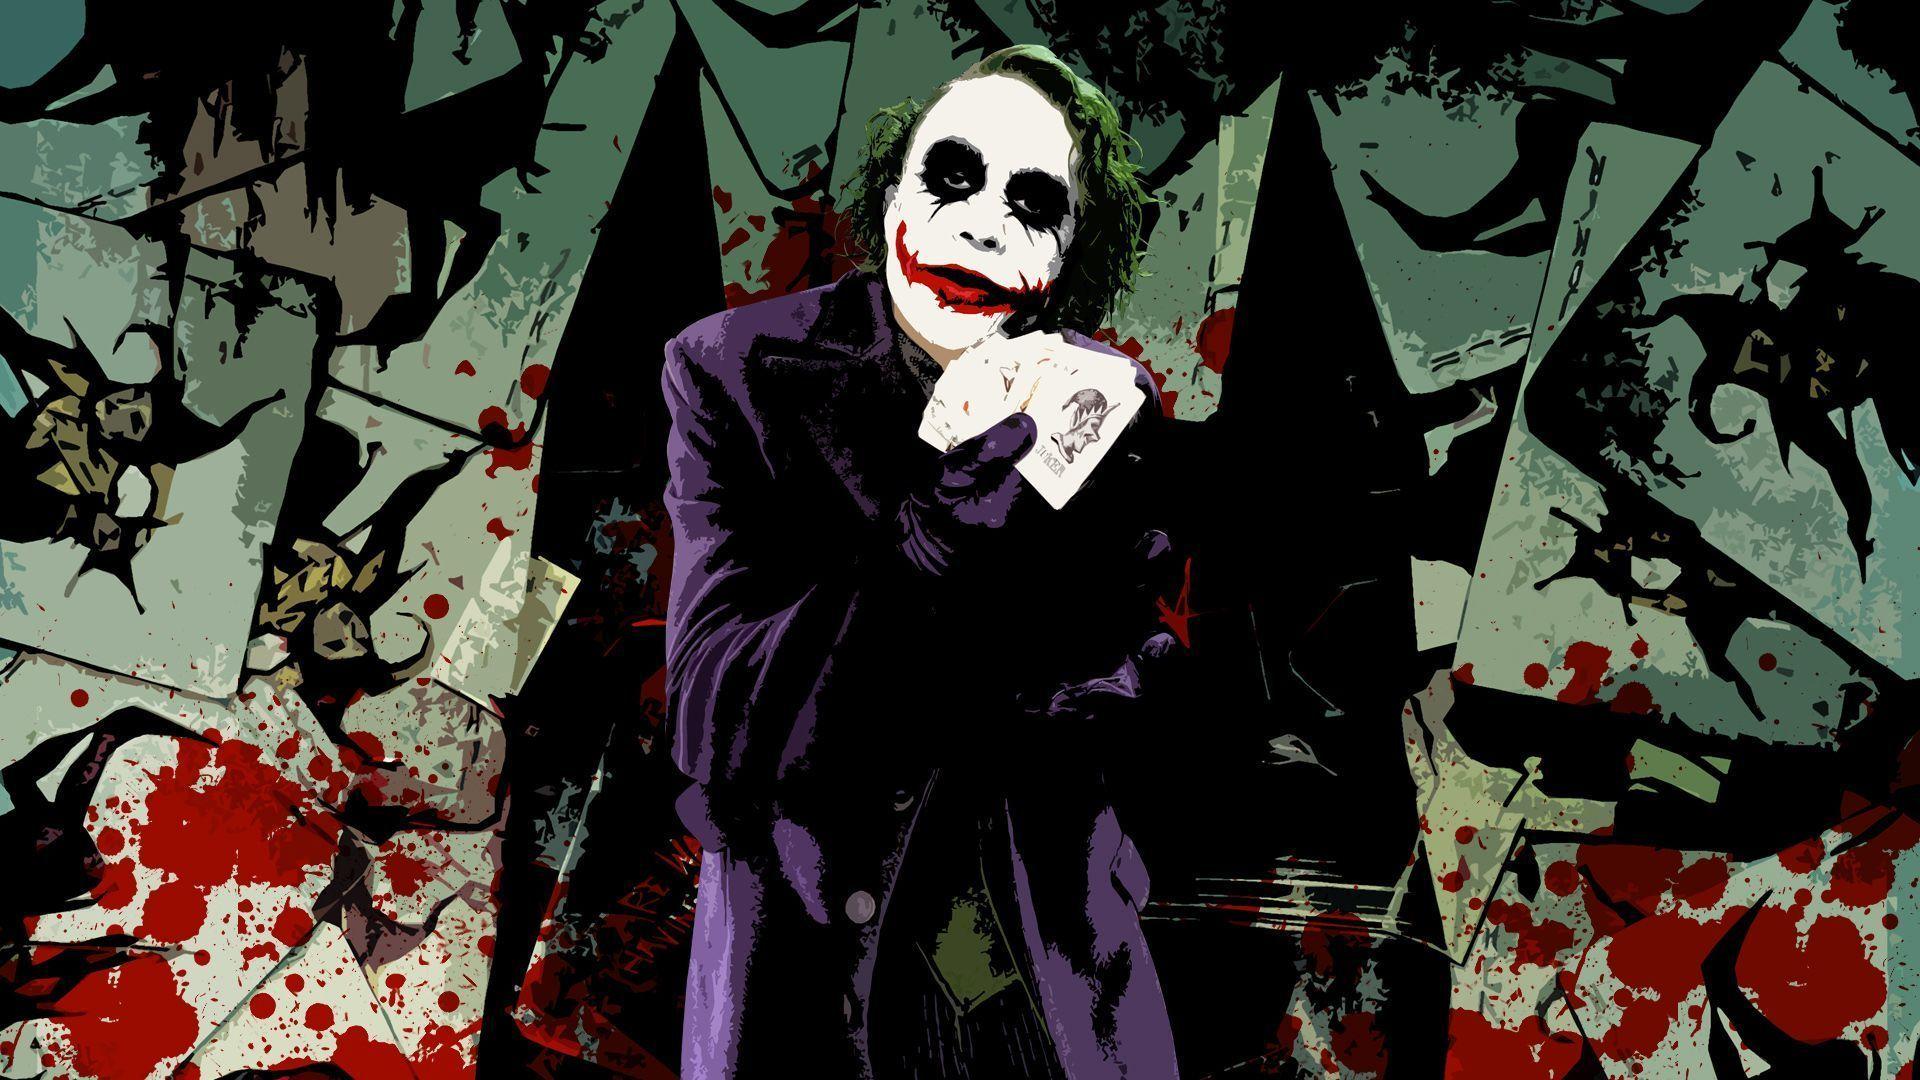 Joker background knight web wallpaper background dark